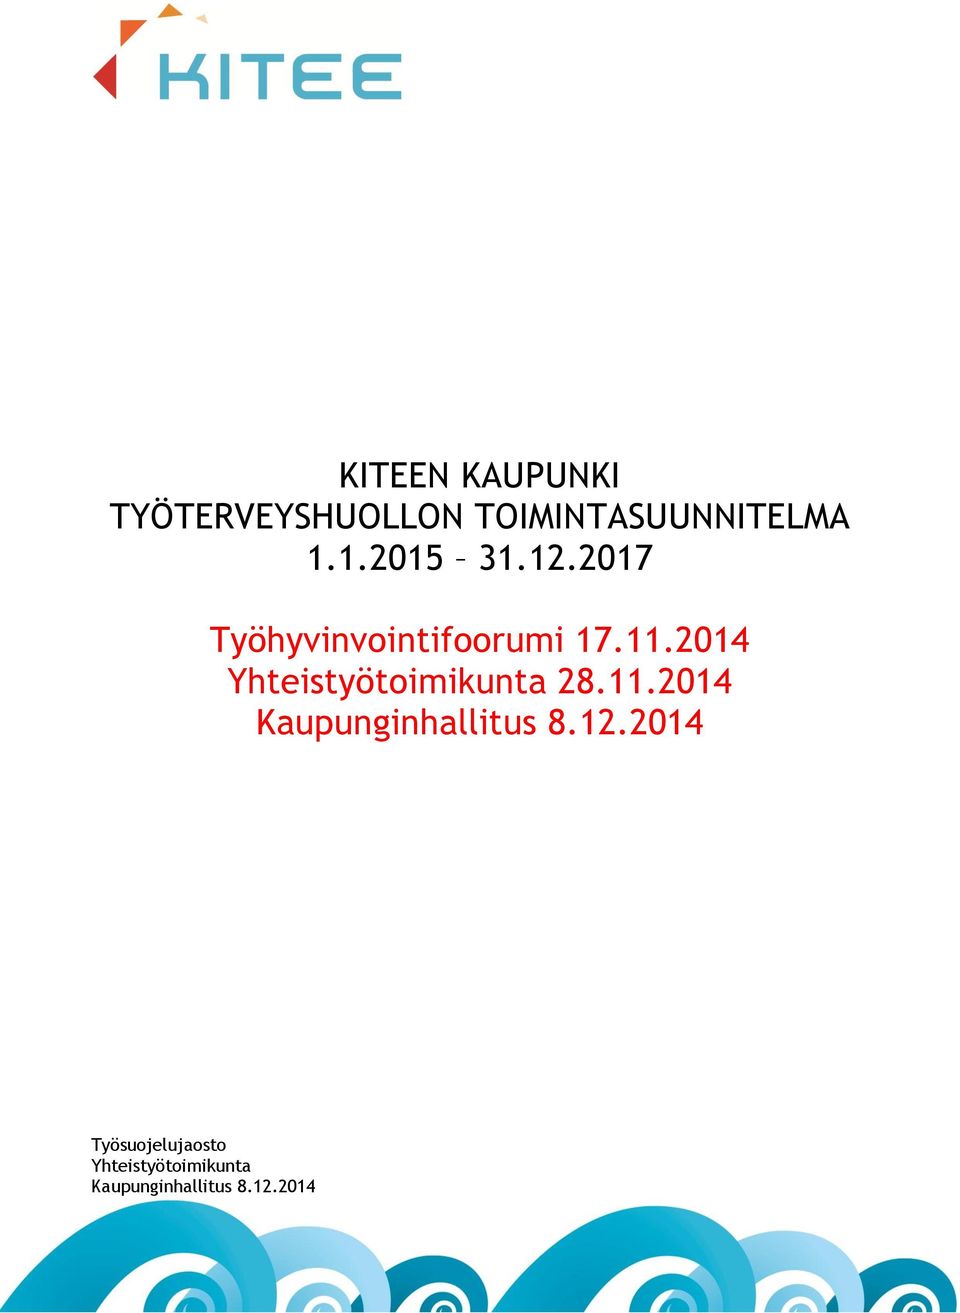 2014 Yhteistyötoimikunta 28.11.2014 Kaupunginhallitus 8.